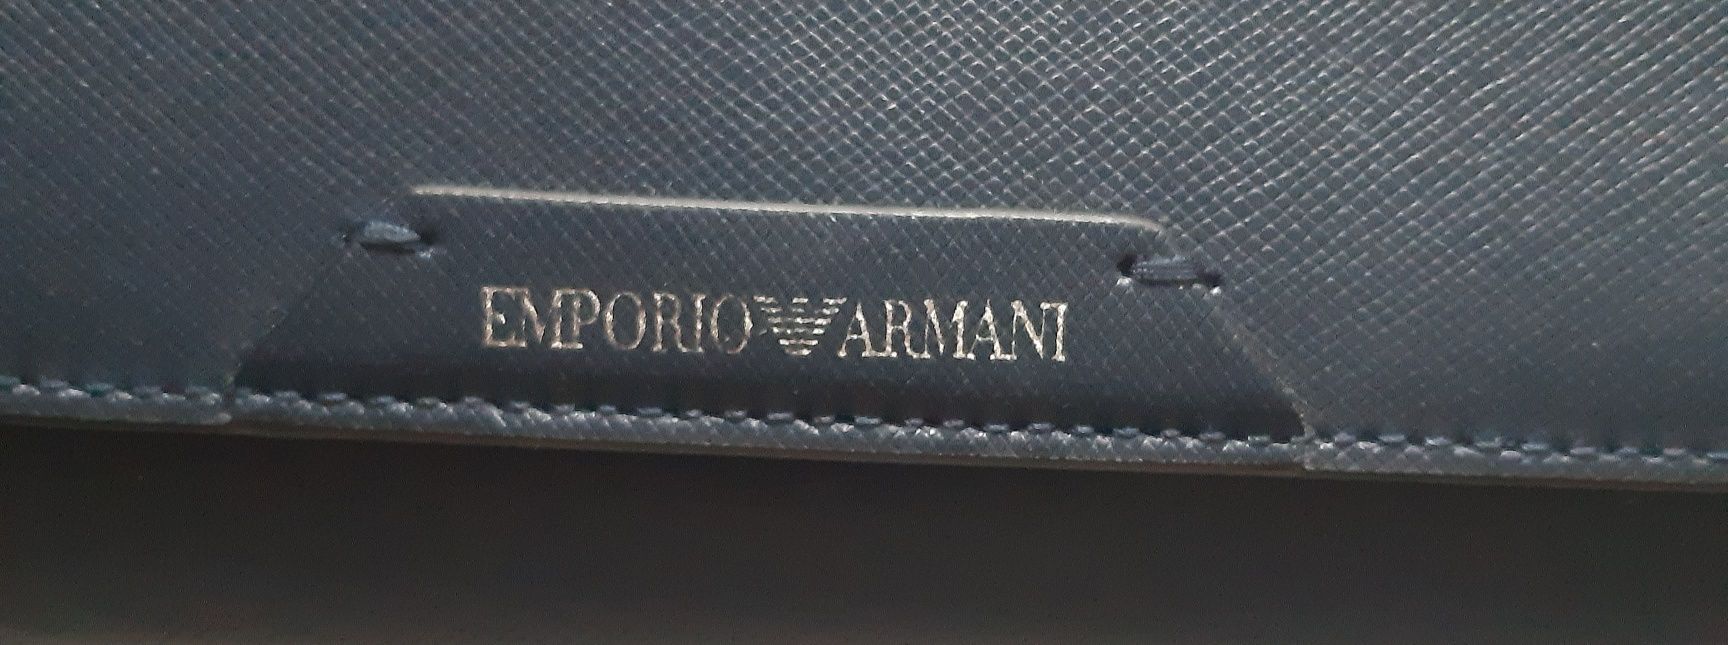 portfel Emporio Armani